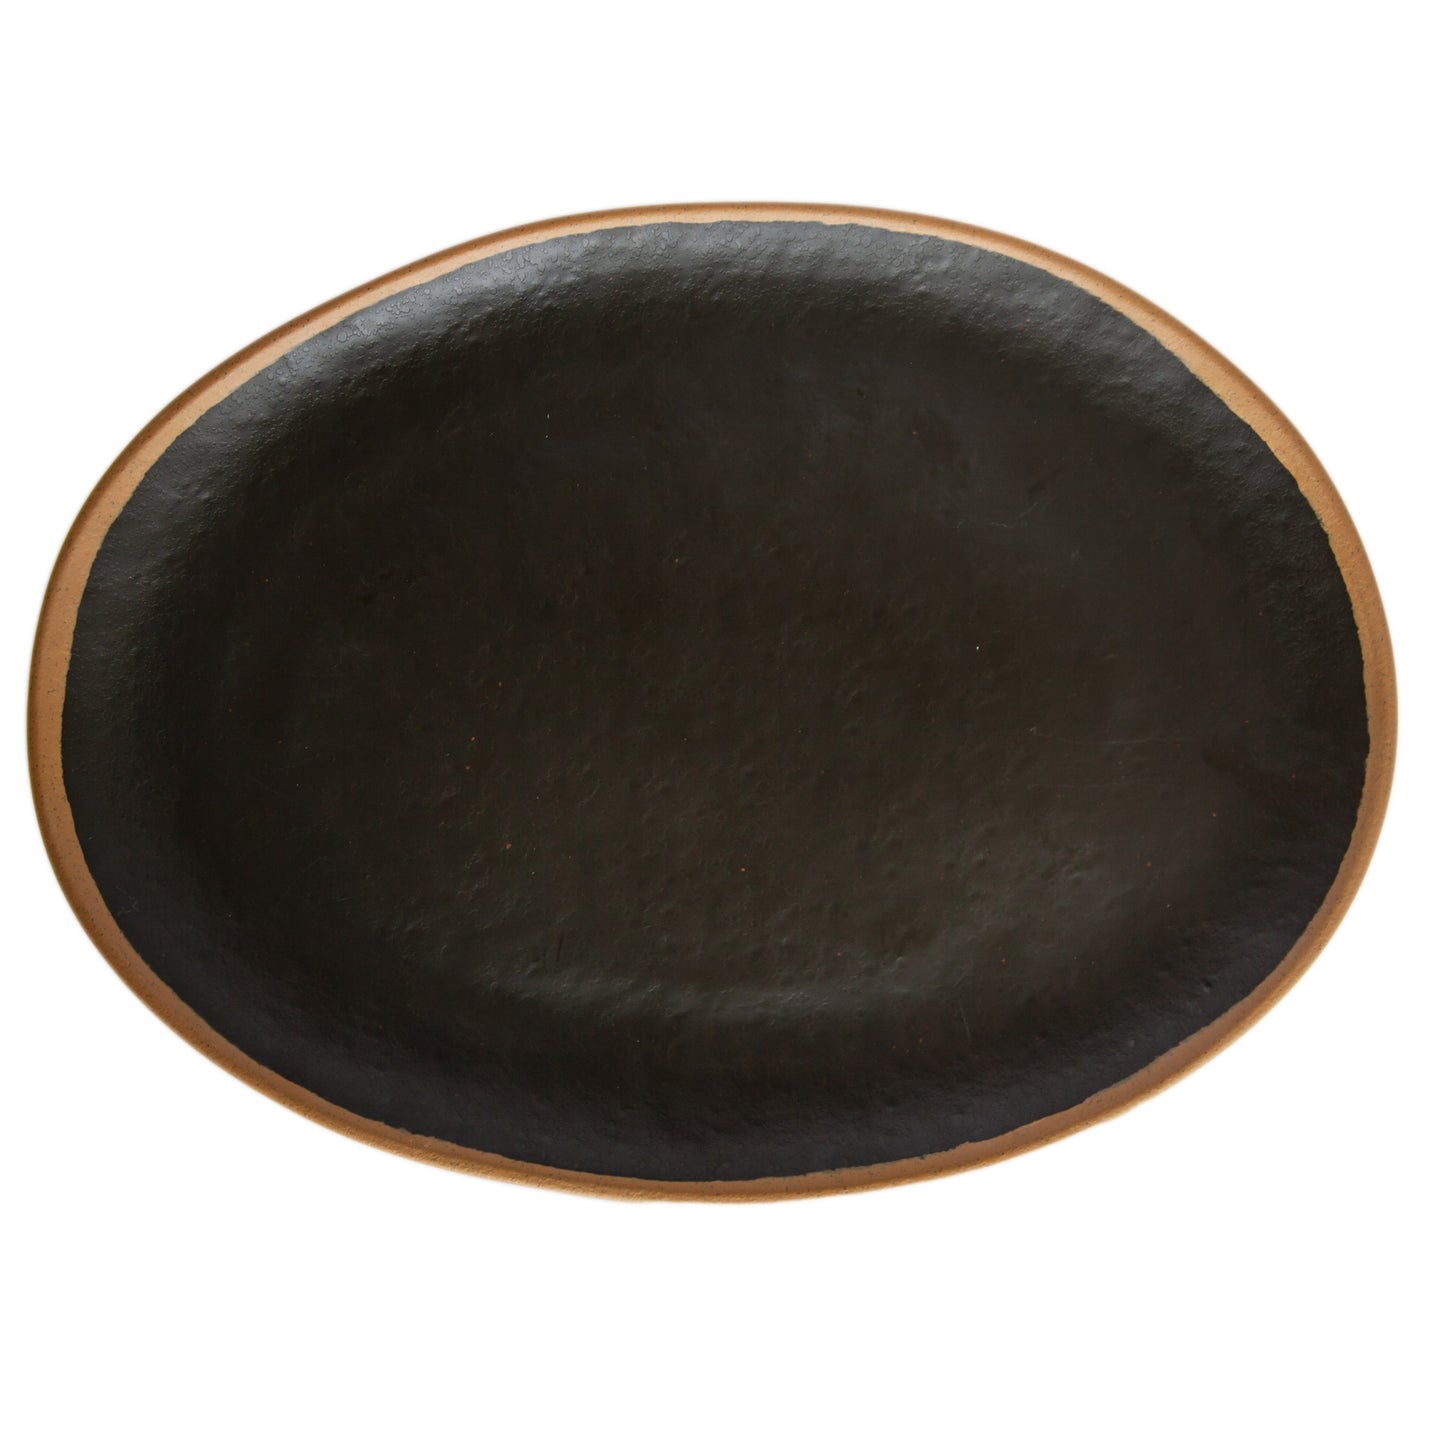 15" x 11" Brown, Melamine, Oval Platter, G.E.T. Pottery Market Glazed